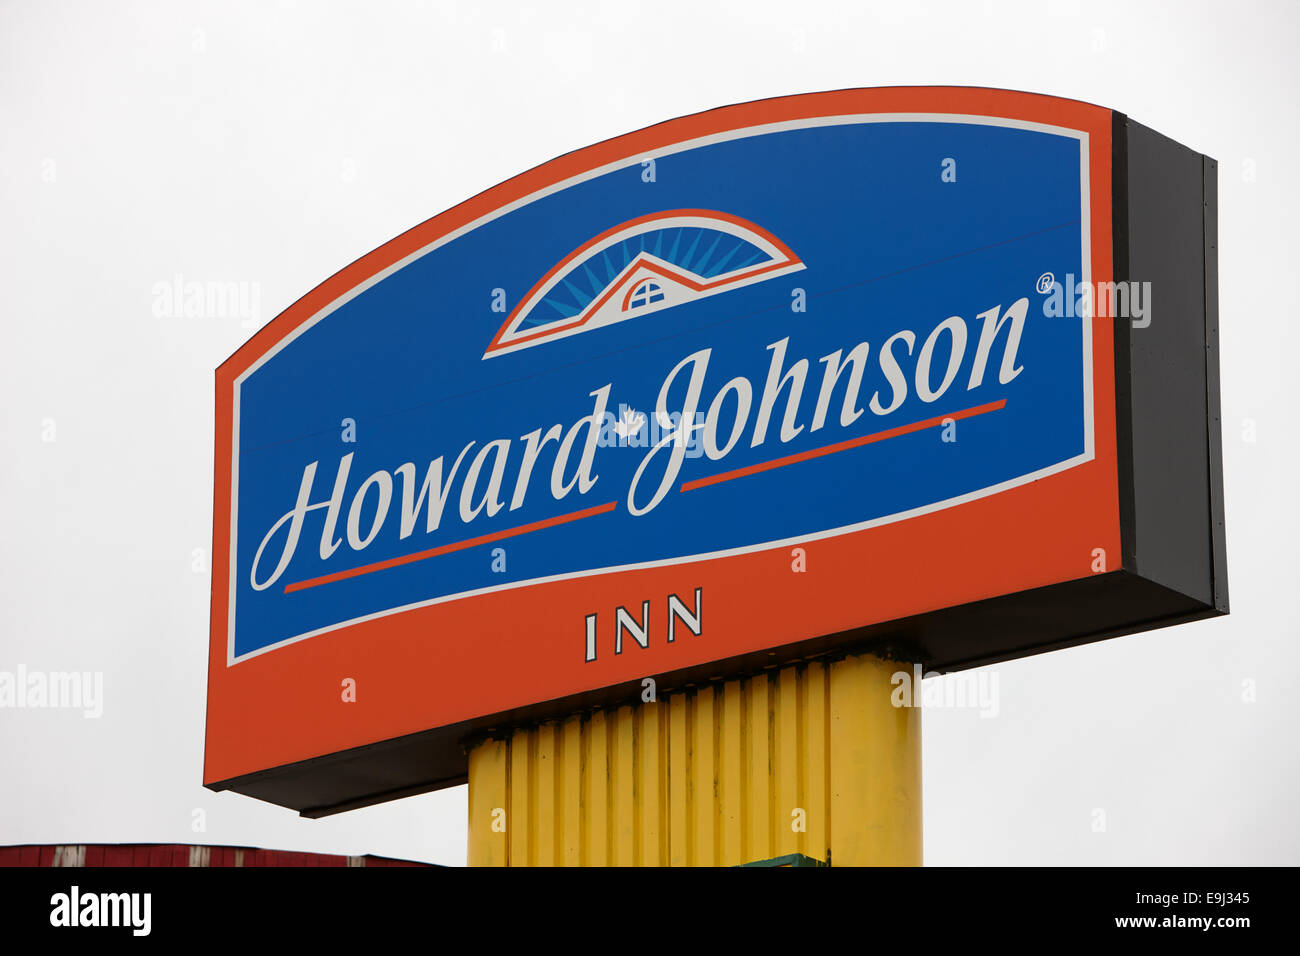 howard johnson logo